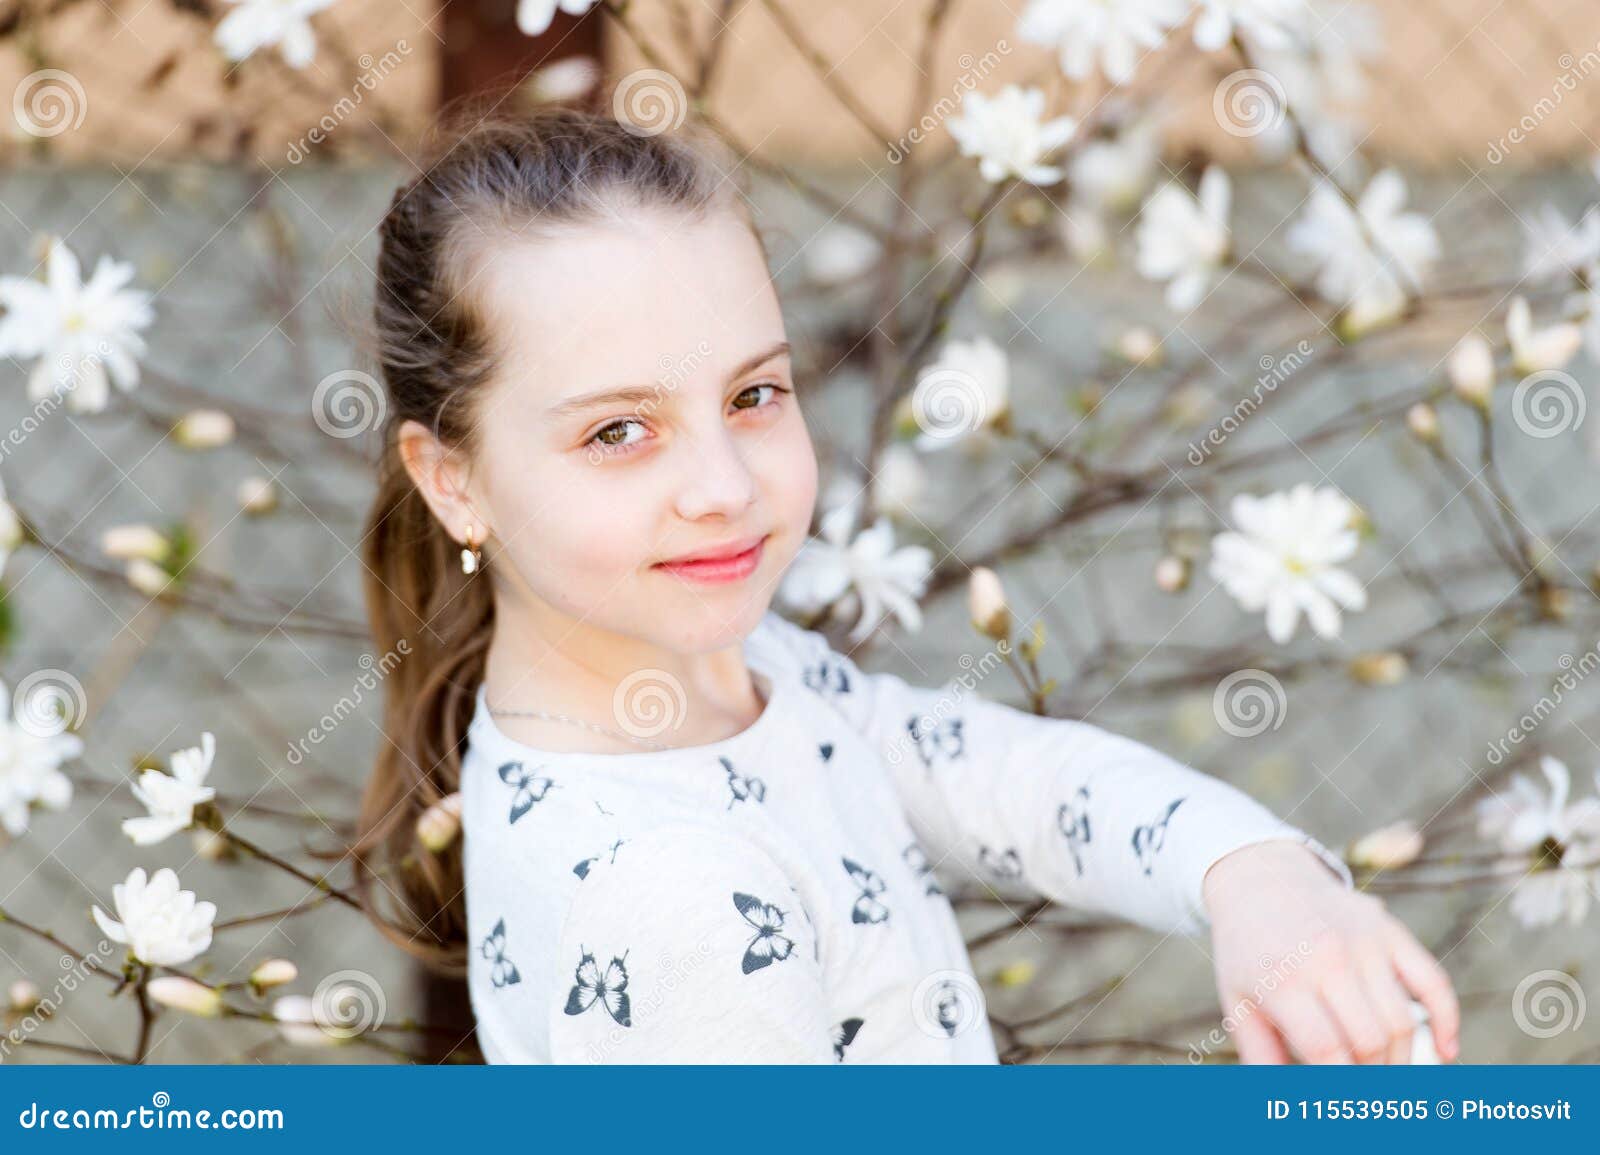 开花的树的美丽的春天女孩 库存图片. 图片 包括有 新鲜, 构成, 白种人, 室外, 自然, 女孩, 头发 - 38497657